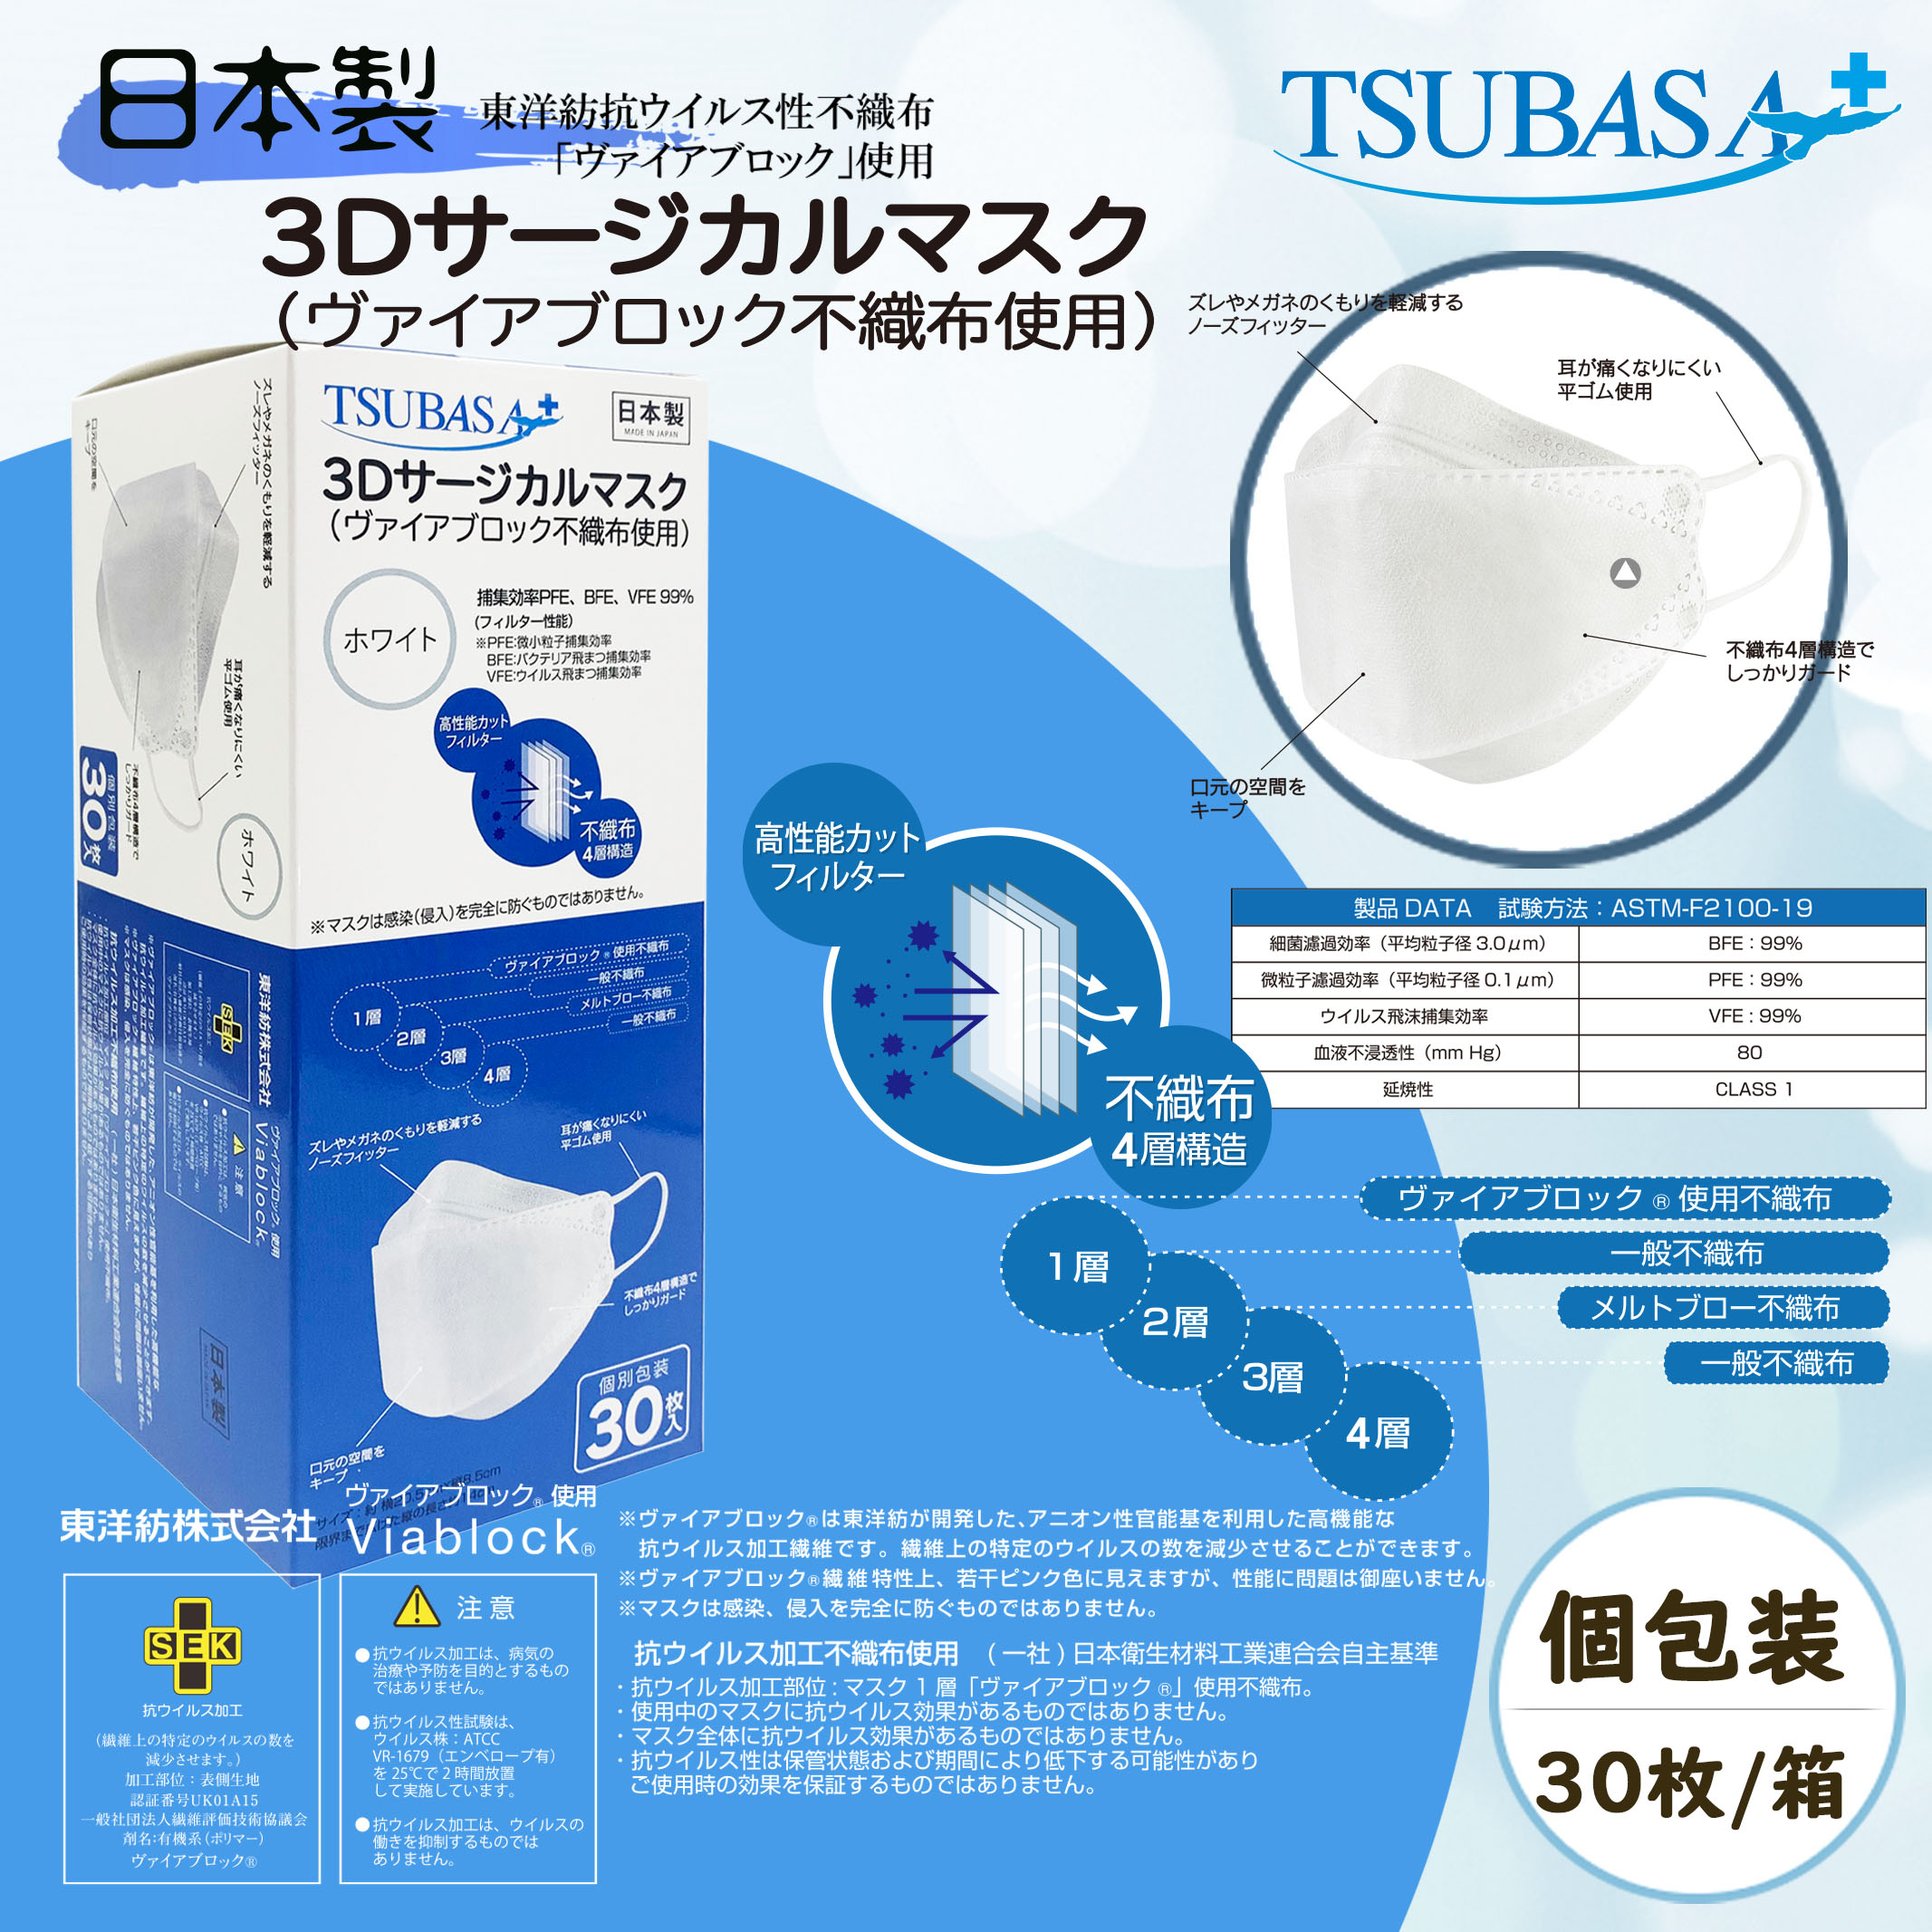 【日本製】TSUBASA 4層構造 個包装 3Dサージカルマスク ヴァイアブロック不織布使用 抗ウイルス 立体サージカルマスク フリーサイズ 1BOX-30枚入り